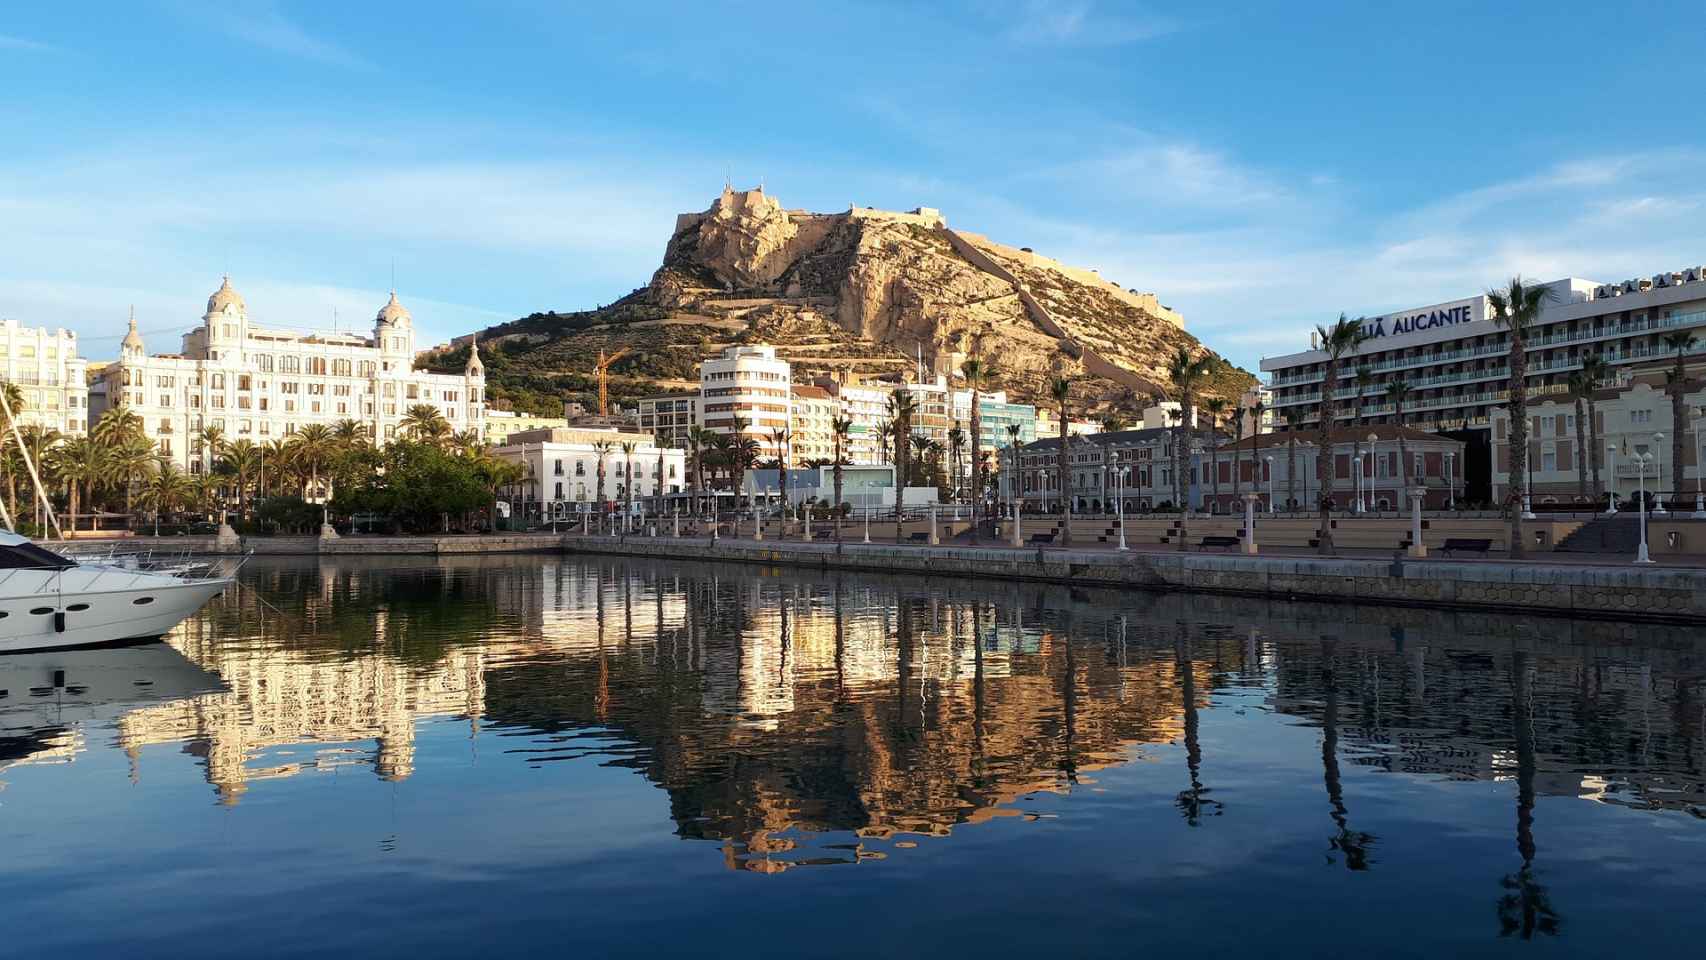 El castillo de Alicante, en una imagen tomada desde su puerto.